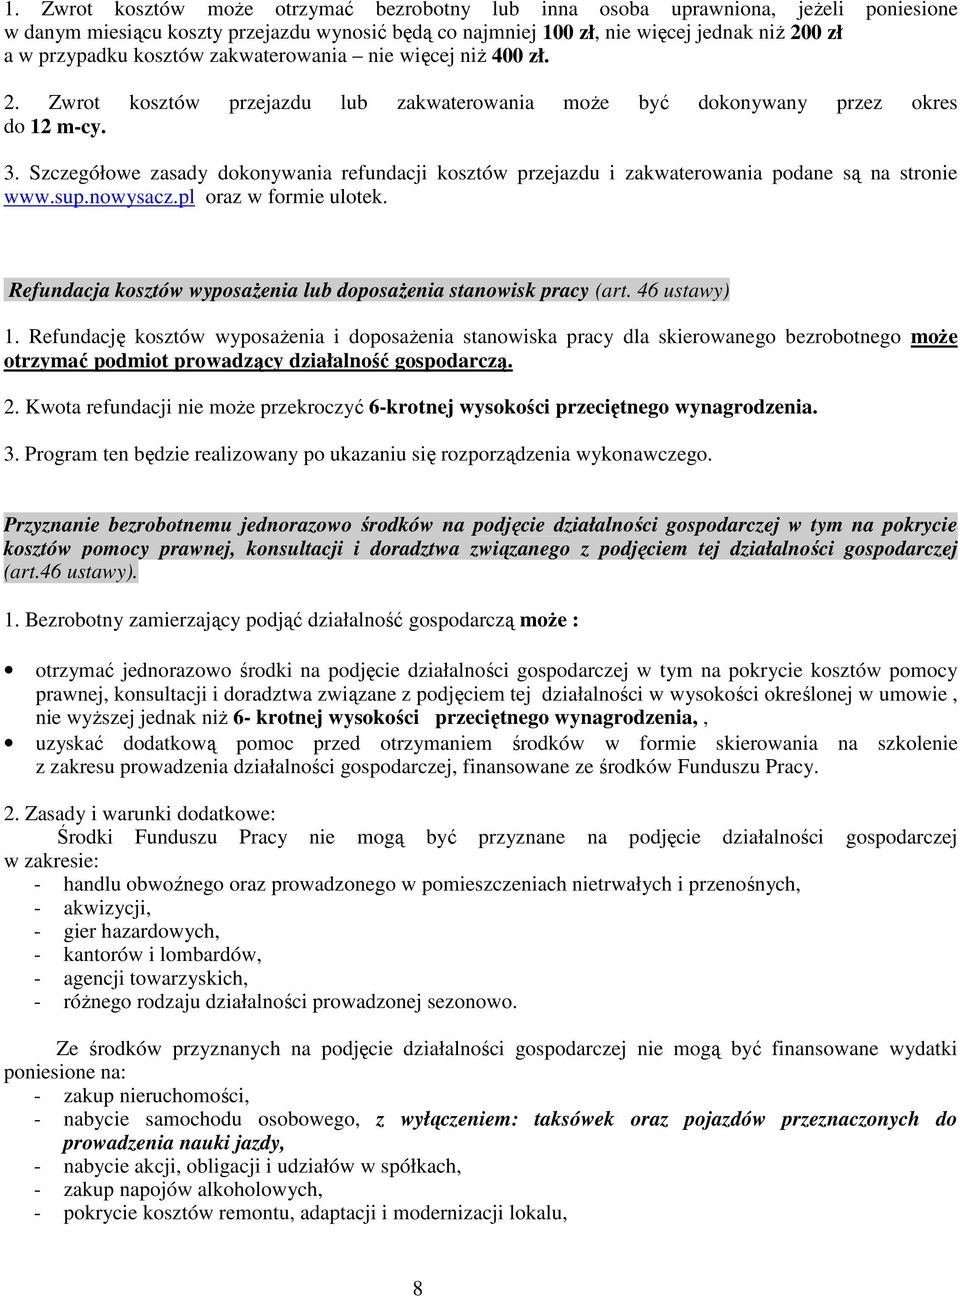 Szczegółowe zasady dokonywania refundacji kosztów przejazdu i zakwaterowania podane są na stronie www.sup.nowysacz.pl oraz w formie ulotek.